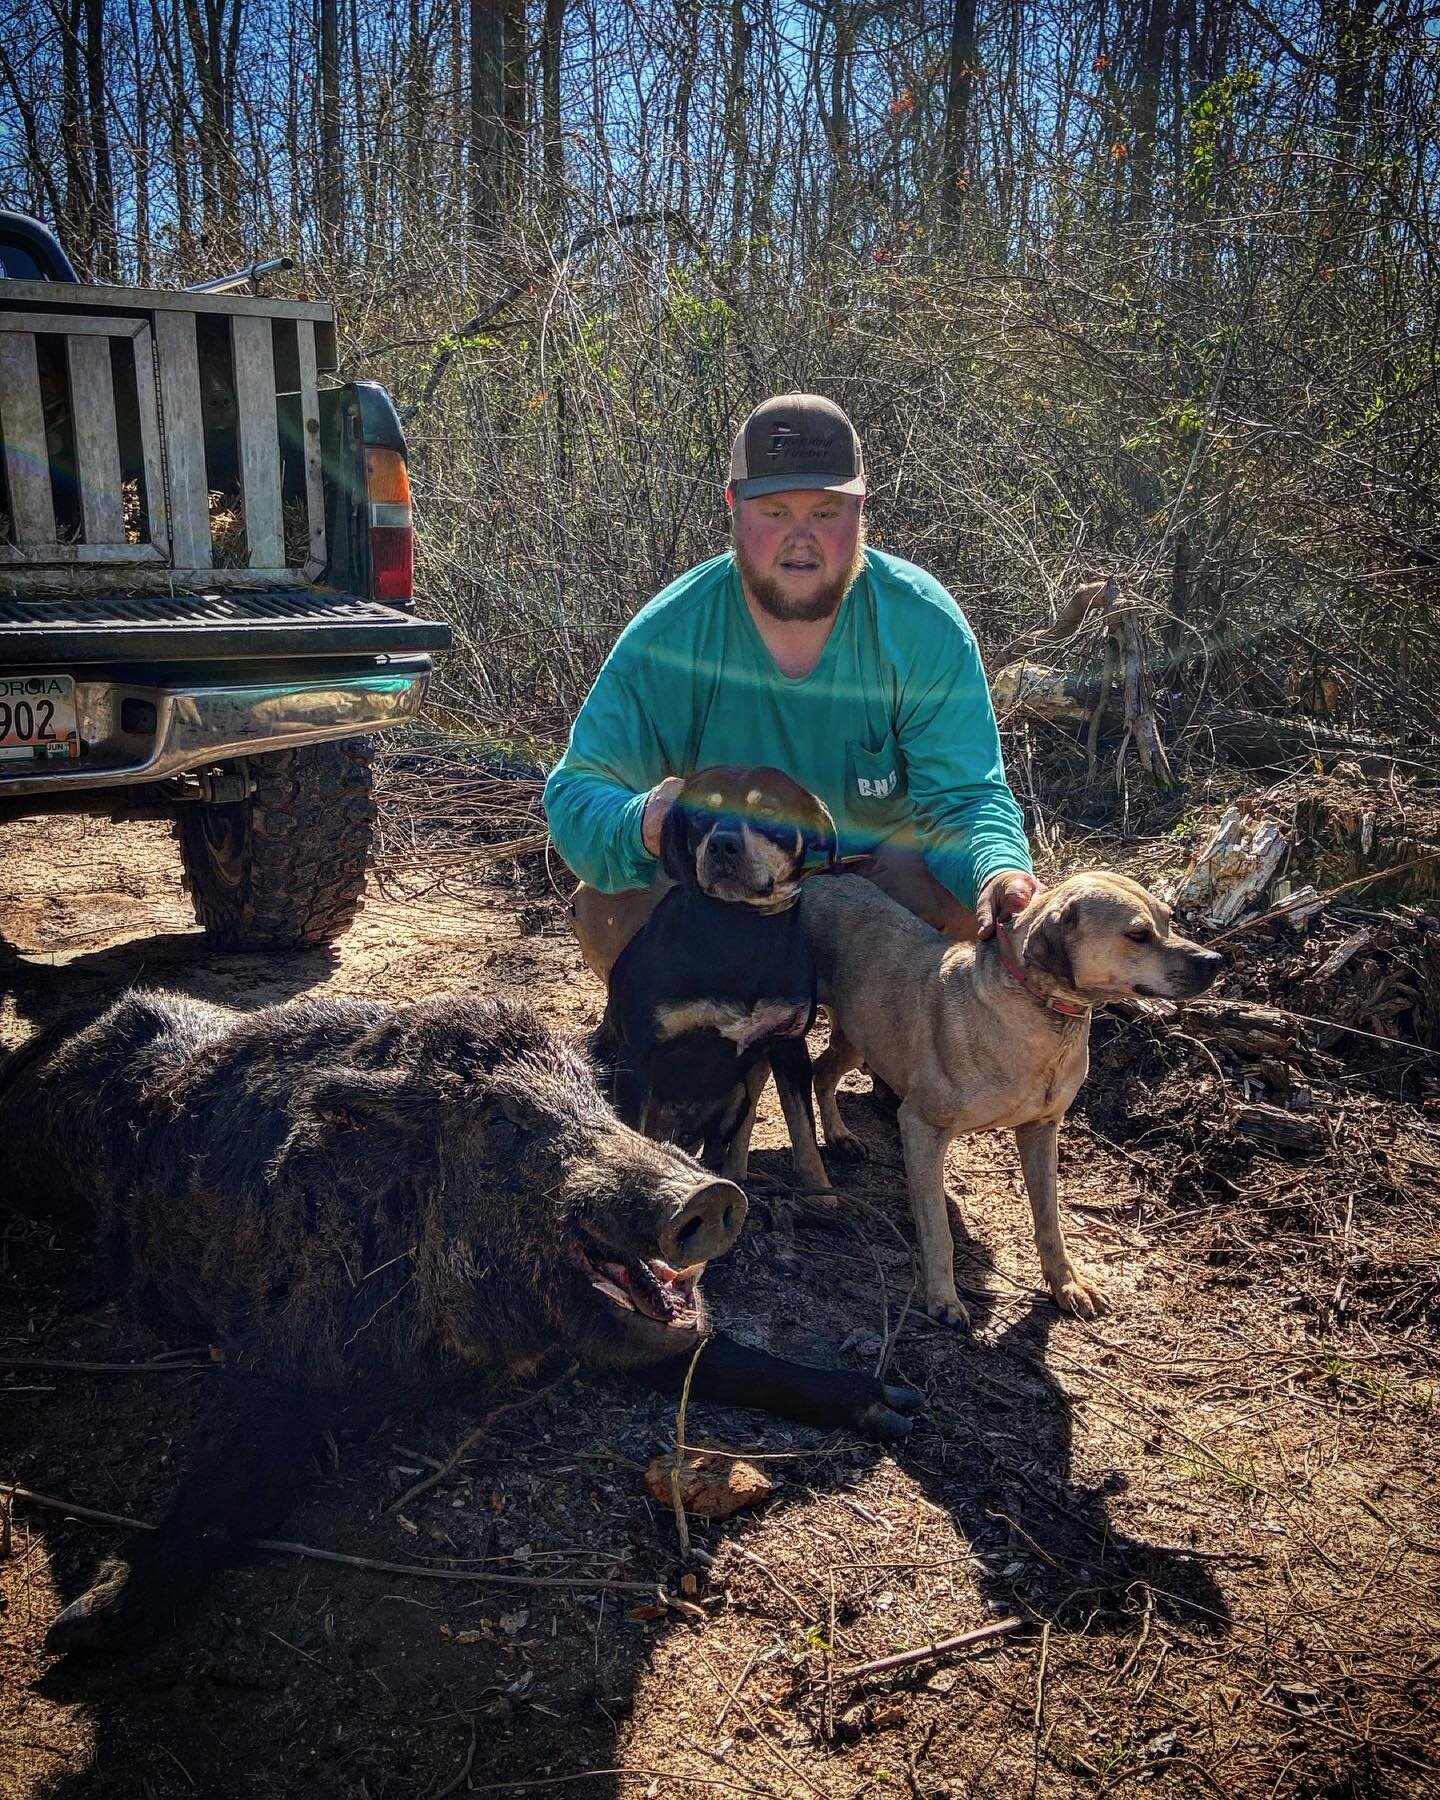 Can&rsquo;t beat a quick cur dog morning hunt 🤙🏼
-
@garrett_lb7s 
-
-
-
#hunting #hoghunting #hogdoggin #hogdogs #hogdog #huntingdogs #workingdogs #huntingdog #workingdog #workingdogsofinstagram #collarthedogs #runthatdog #boarsnbroads #georgiasmal